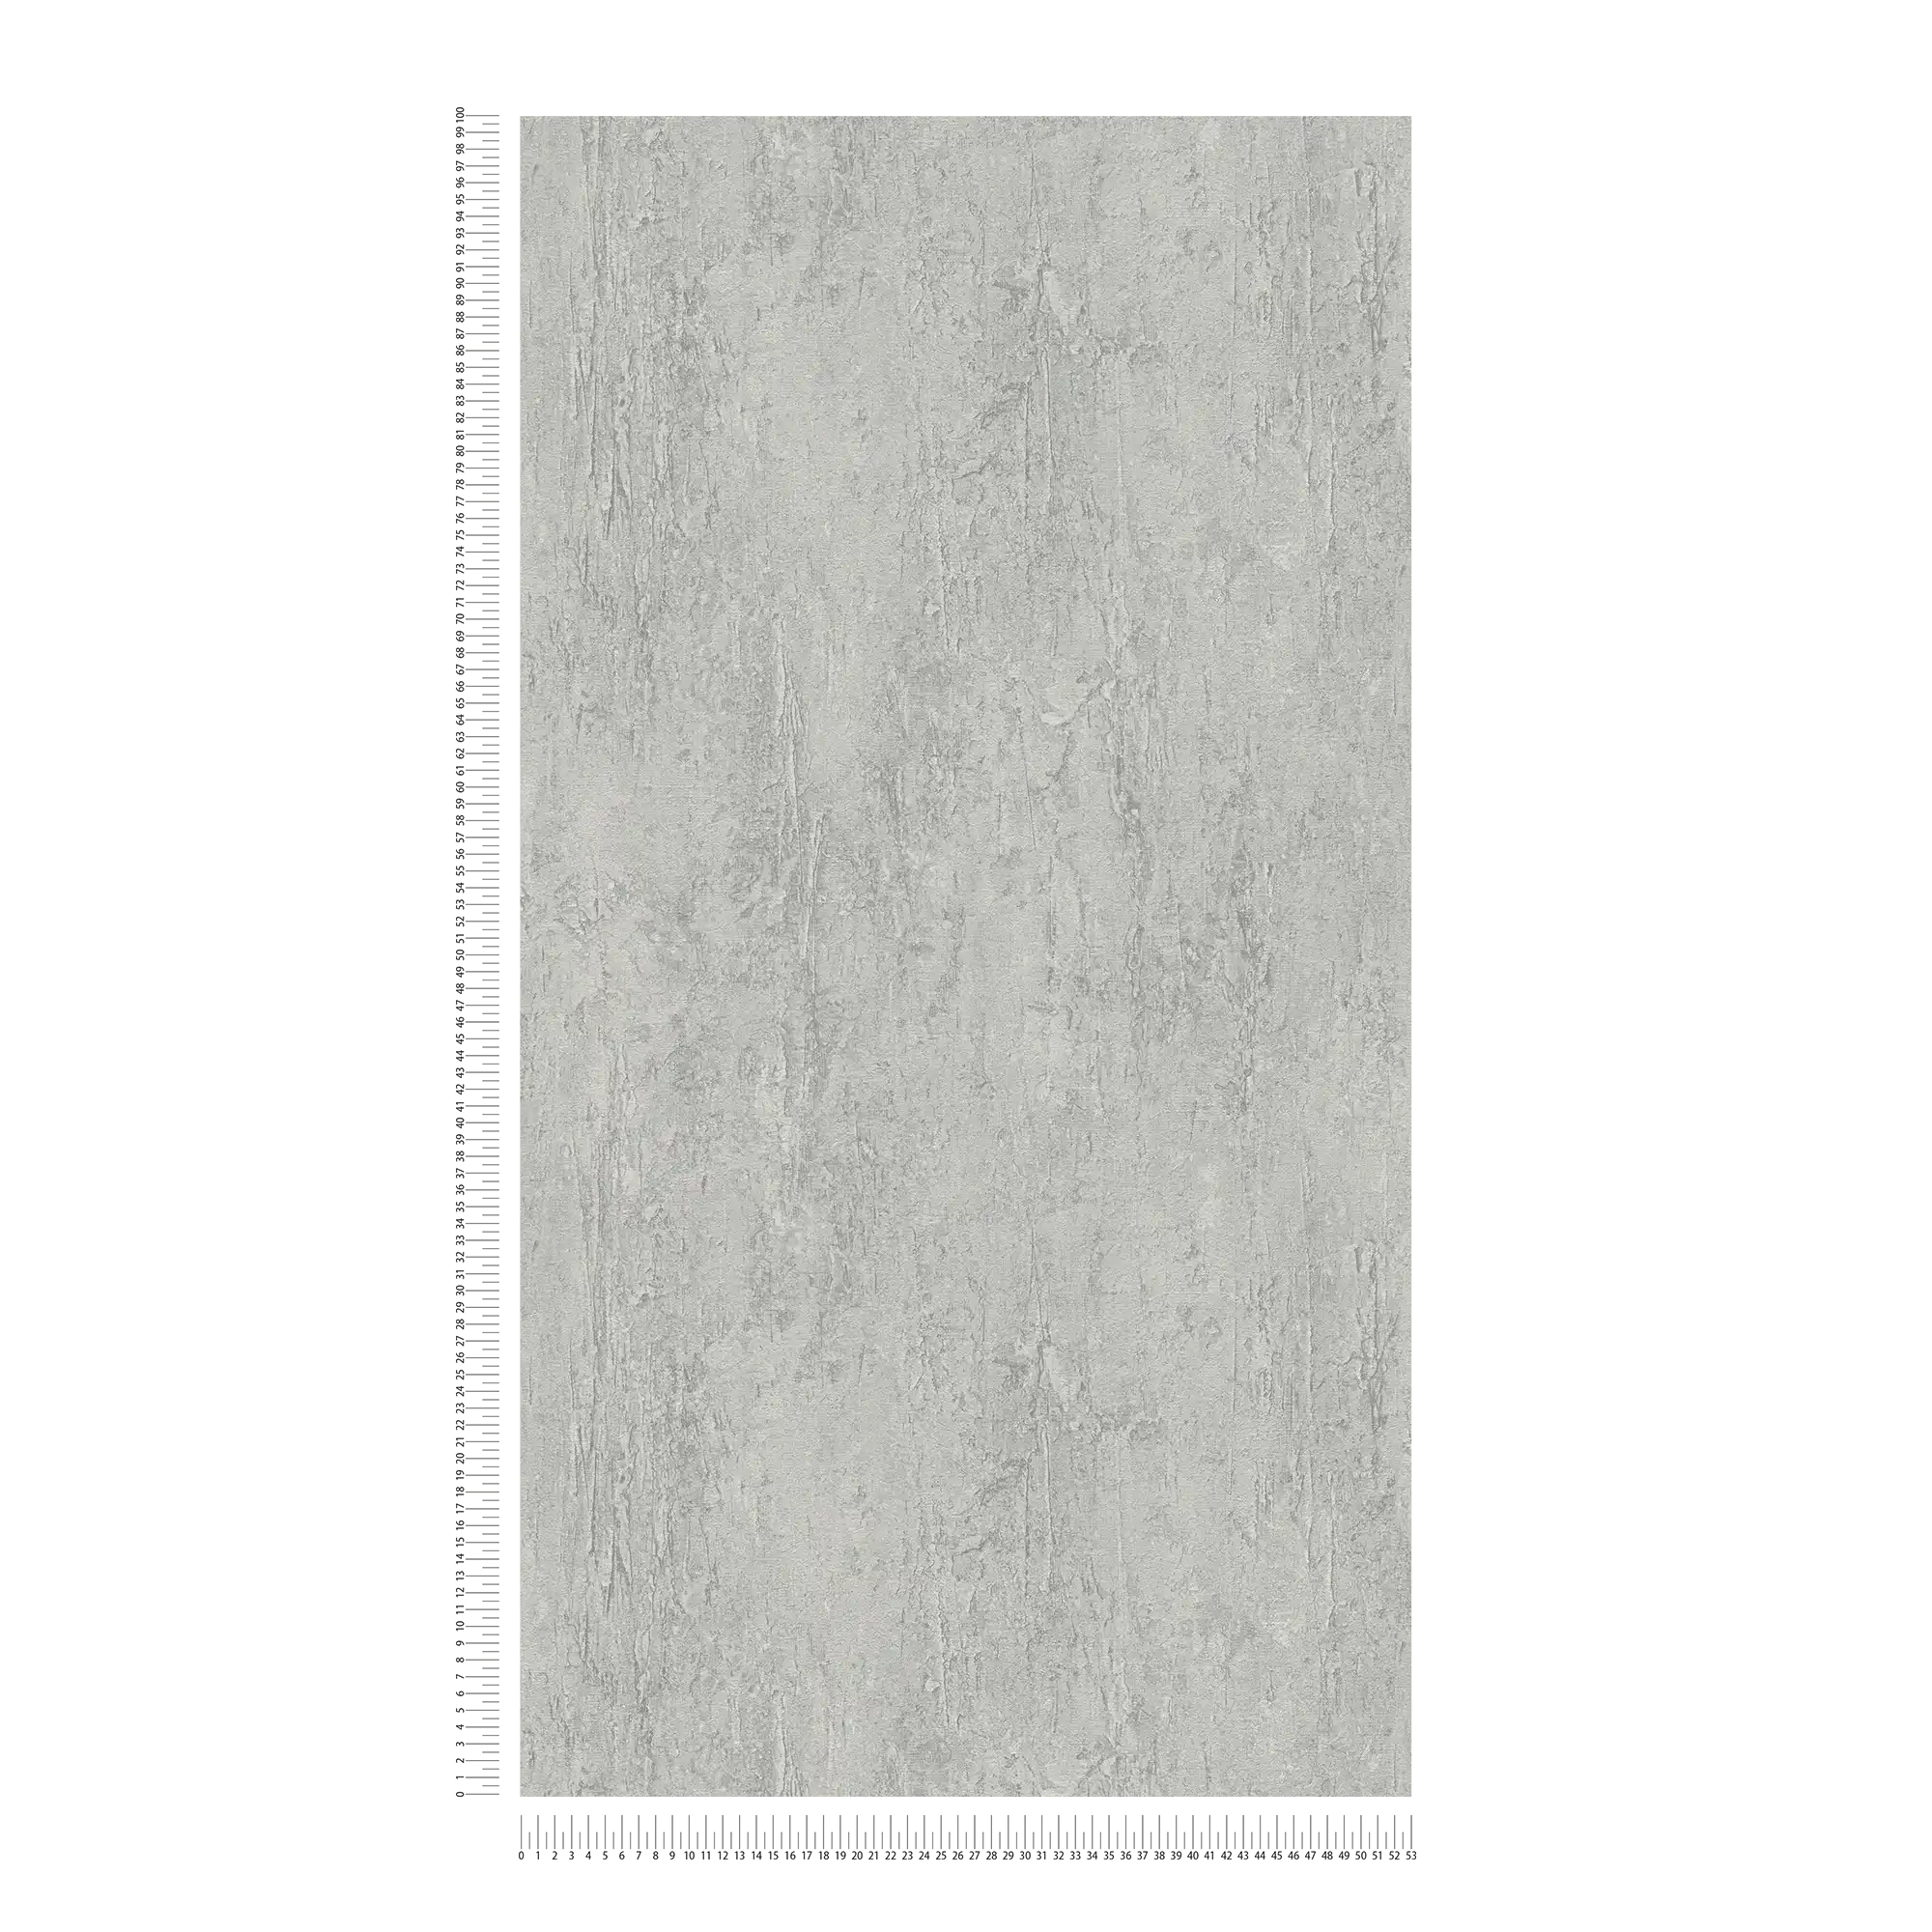             Vliesbehang met natuurlijk structuurpatroon en betonlook - grijs
        